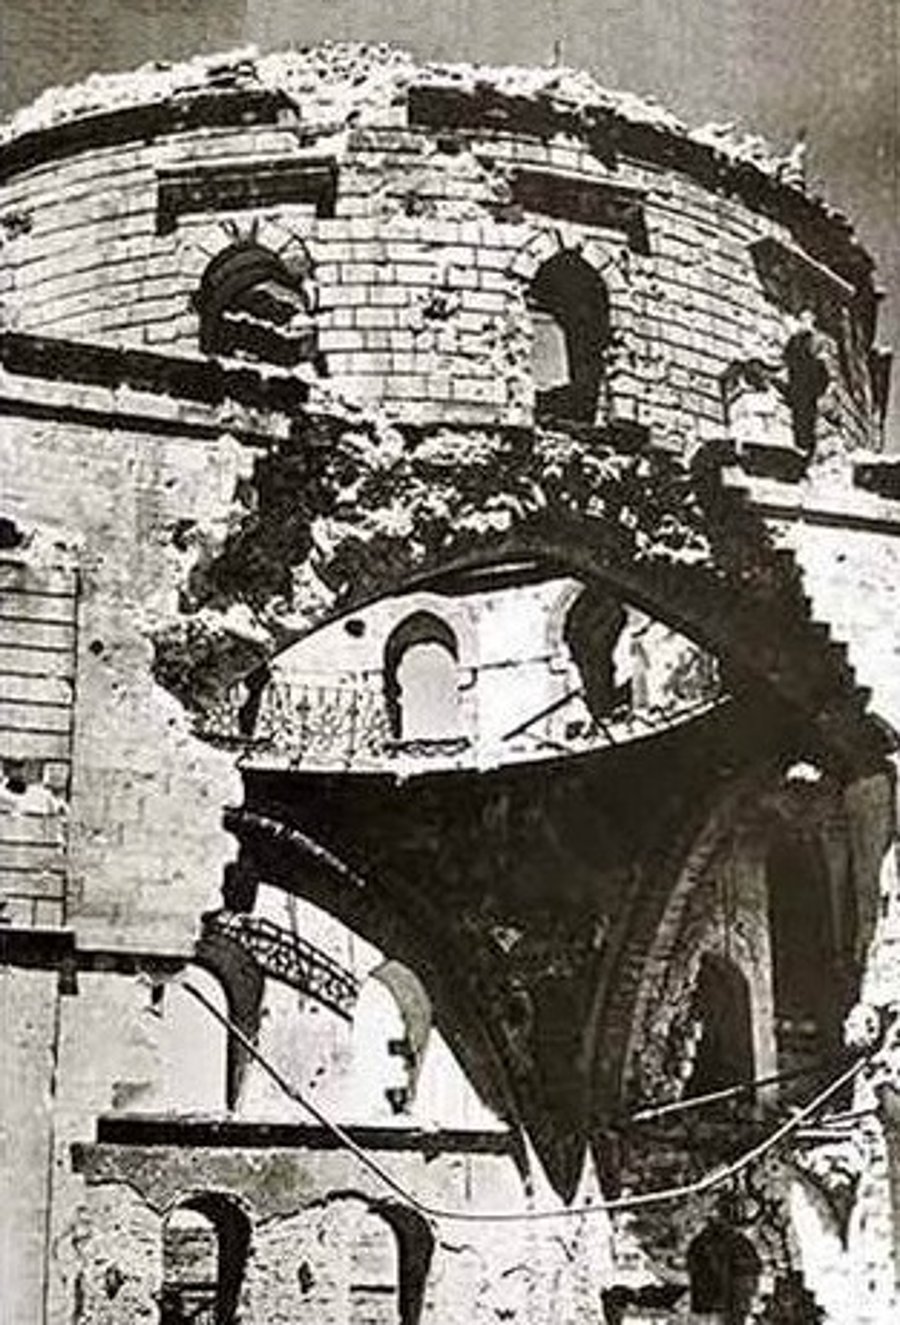 בית הכנסת לאחר שנפגע מההפגזות הירדניות